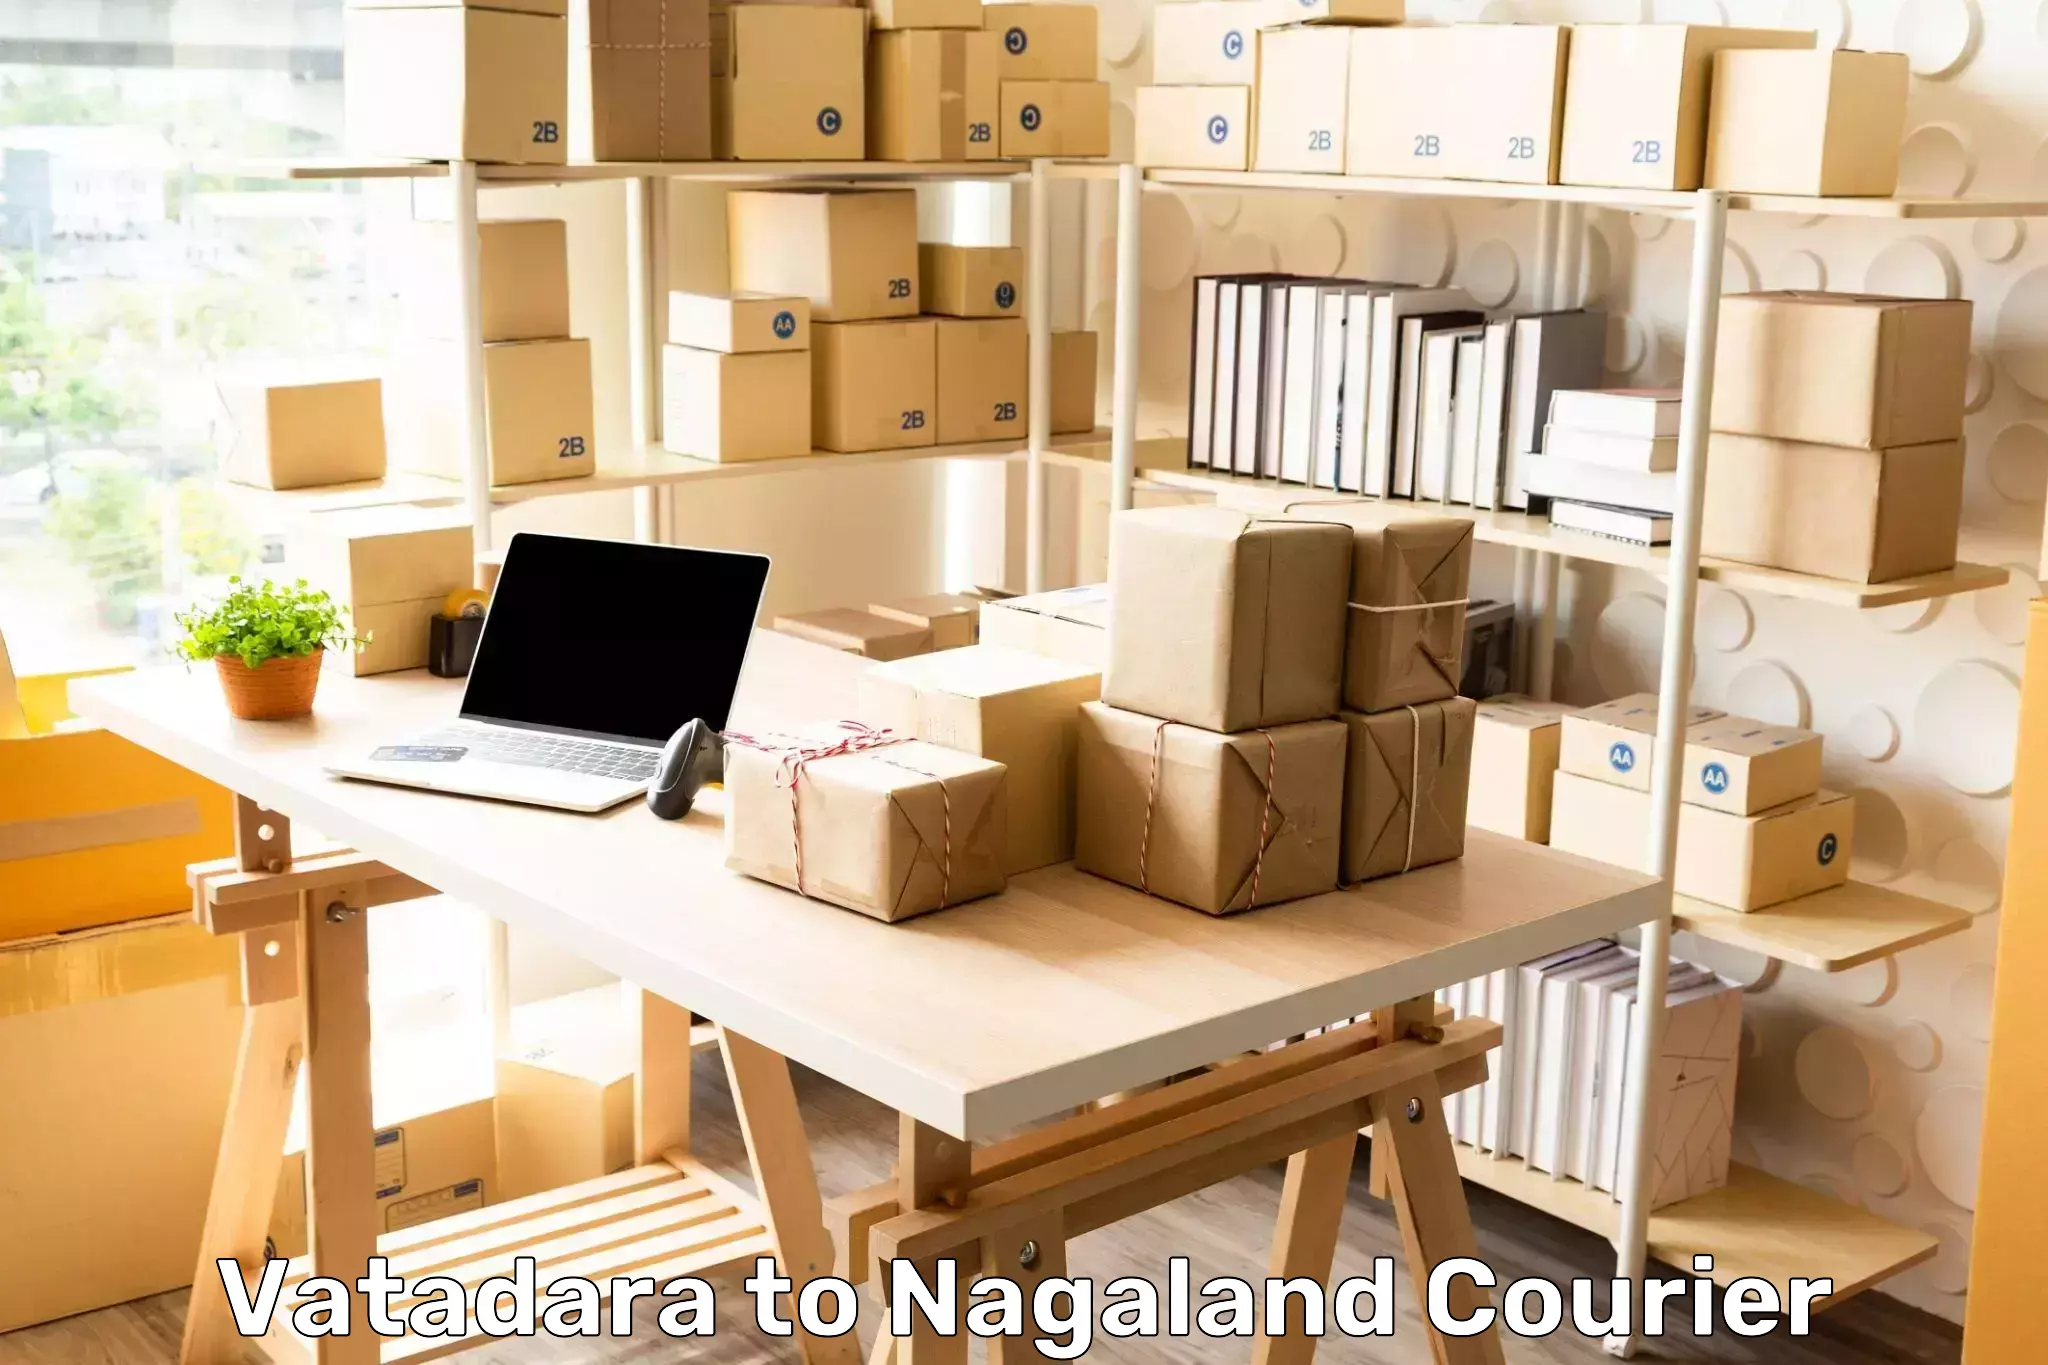 Nationwide shipping services Vatadara to Nagaland